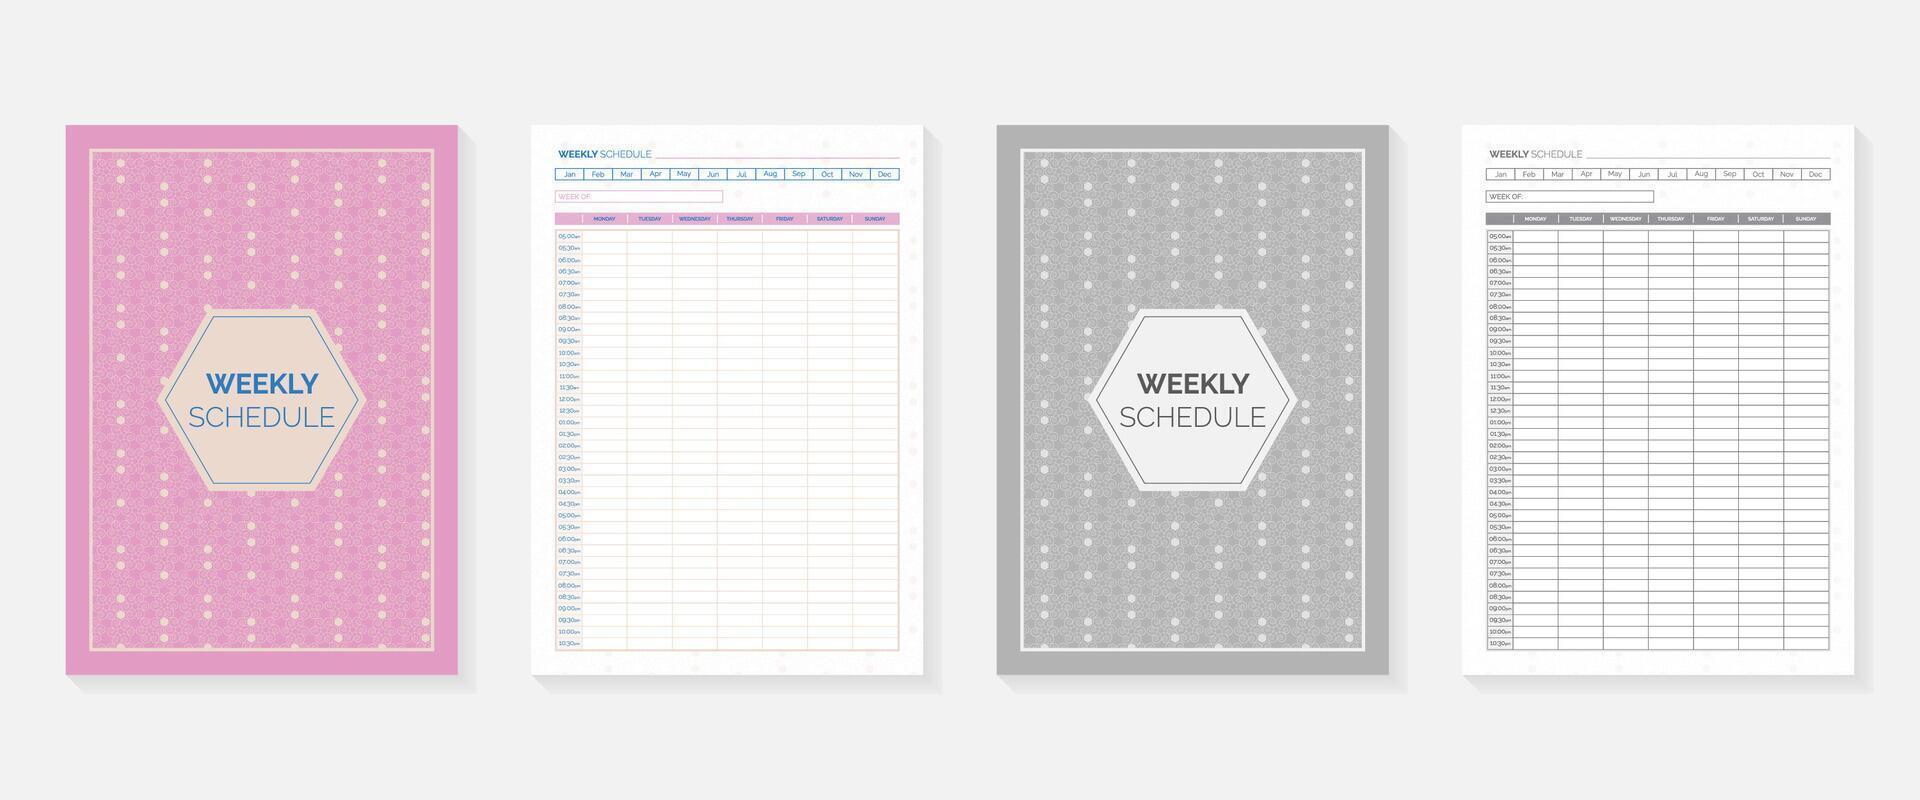 weekly schedule planner template vector